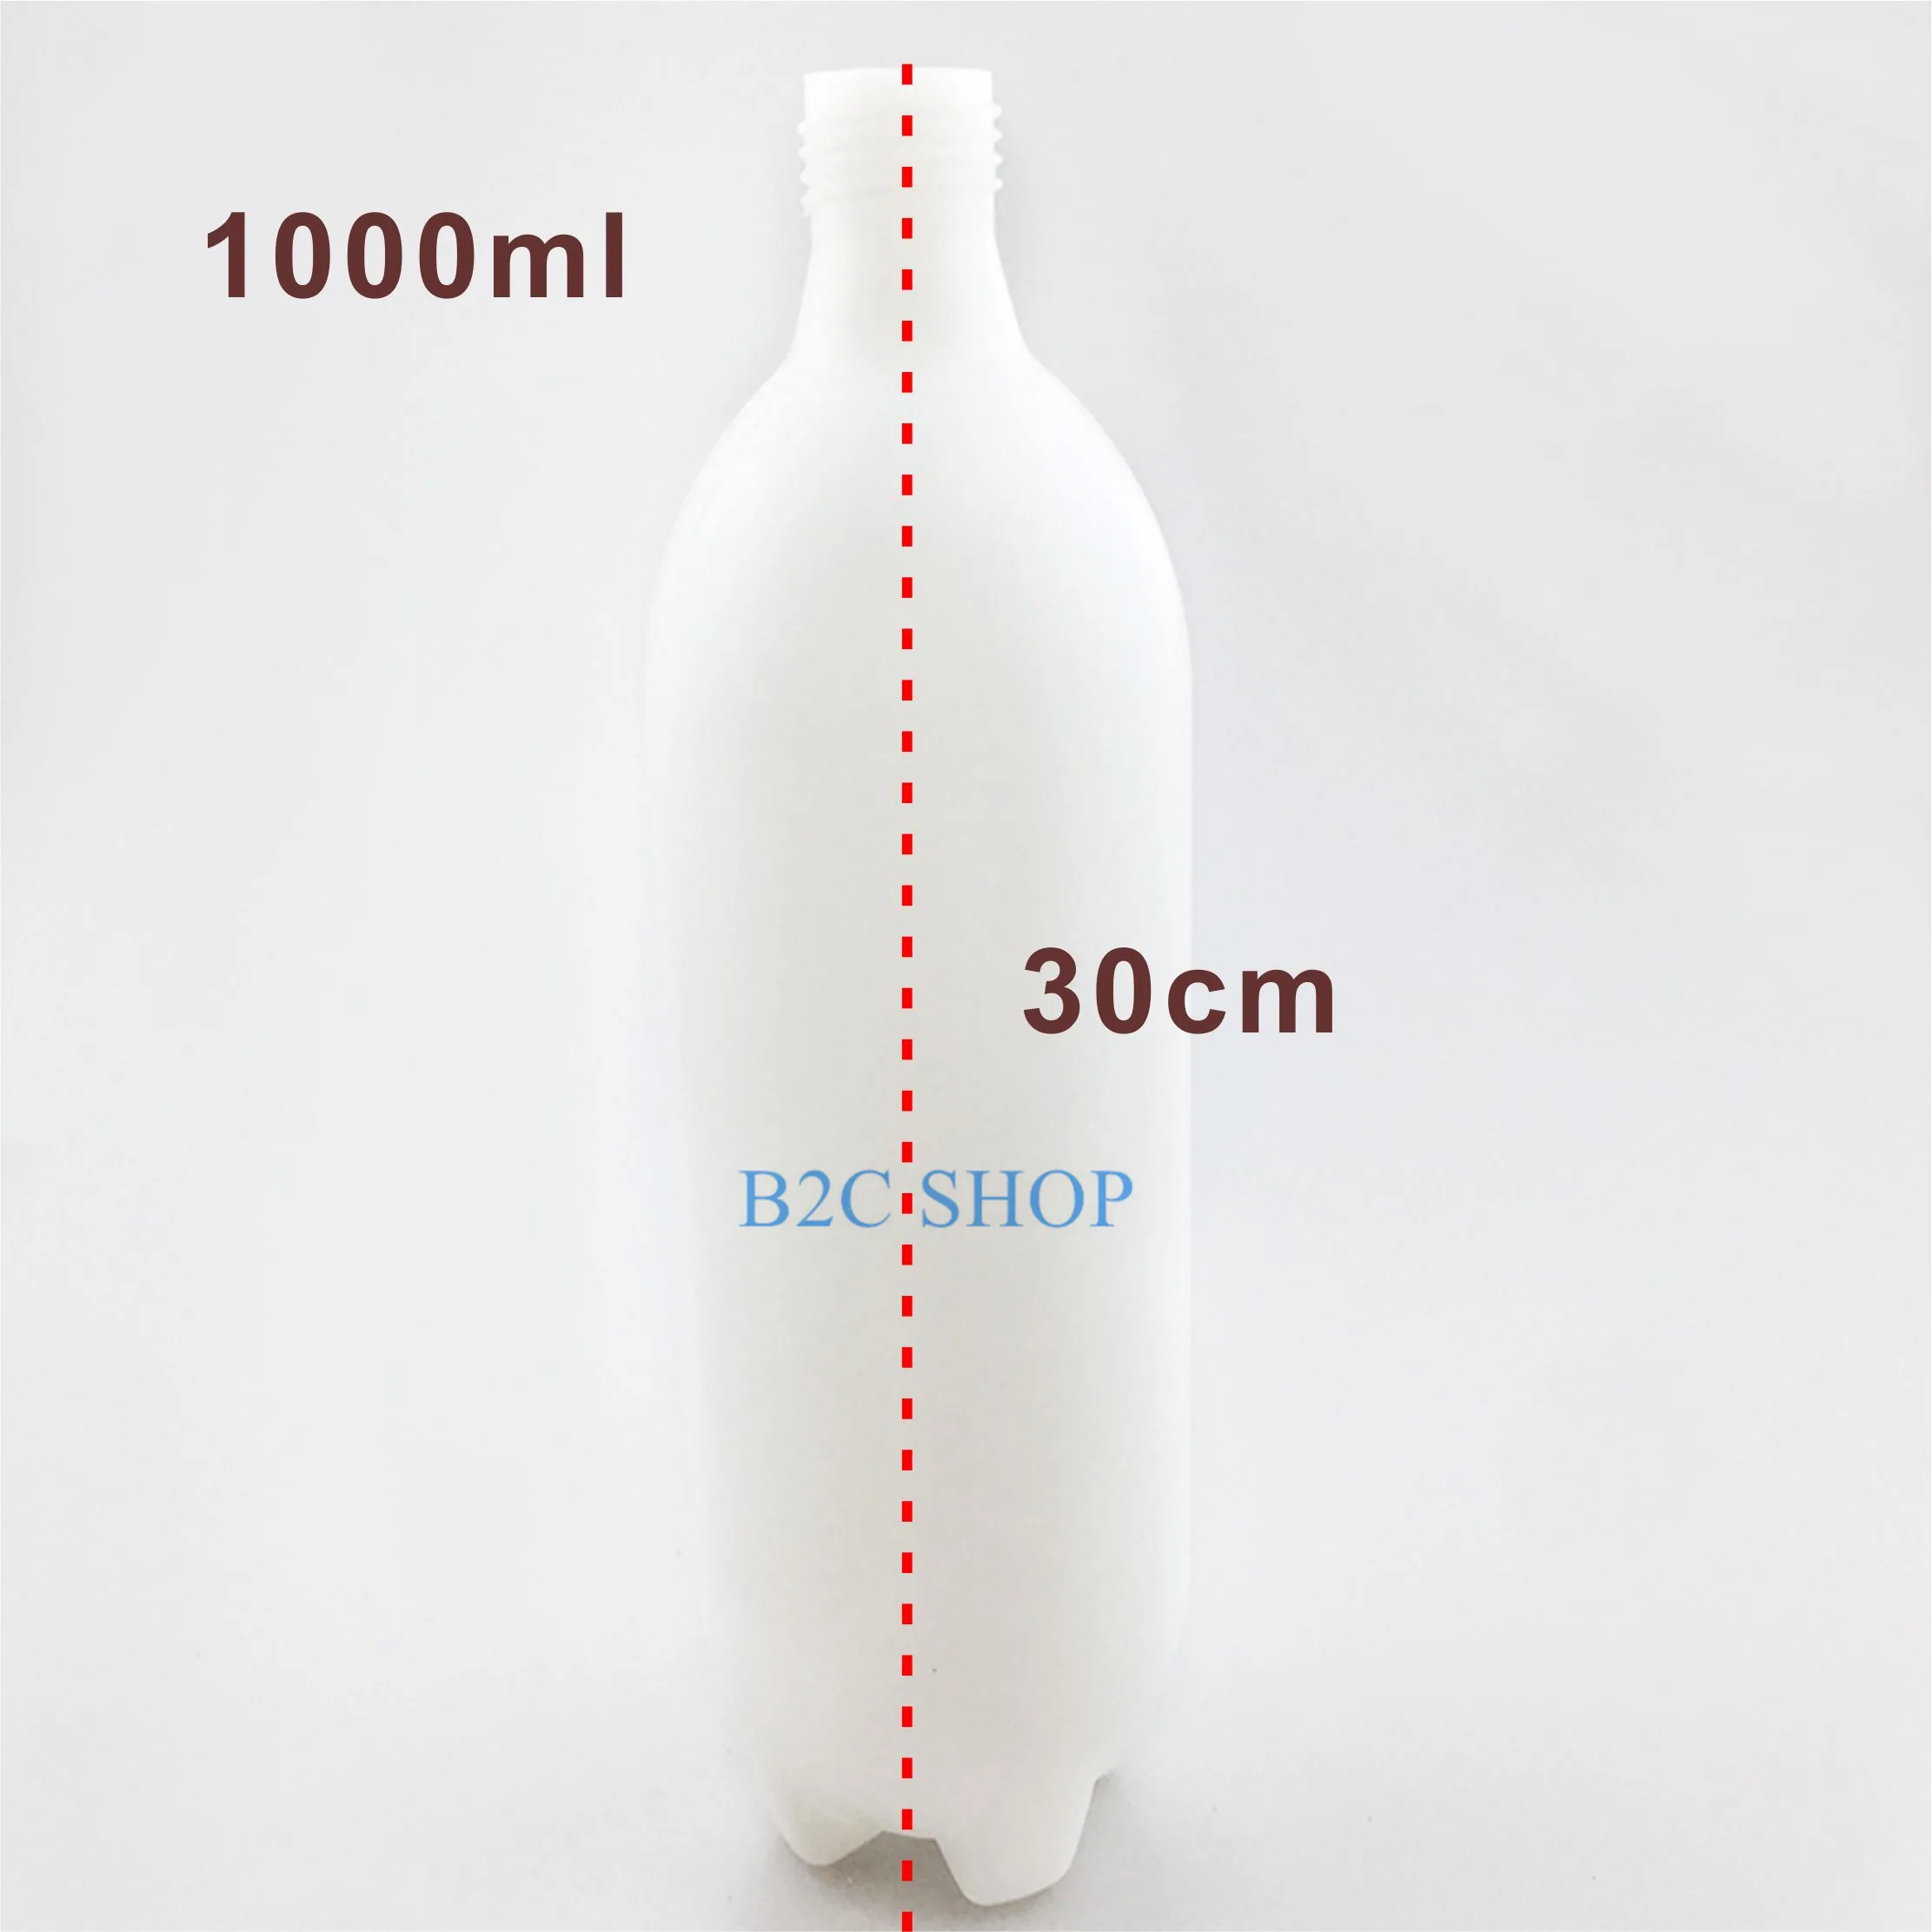 Прозрачная Стоматологическая бутылка для хранения воды стоматологическое кресло аксессуар Стоматологические принадлежности белые бутылки с одной крышкой